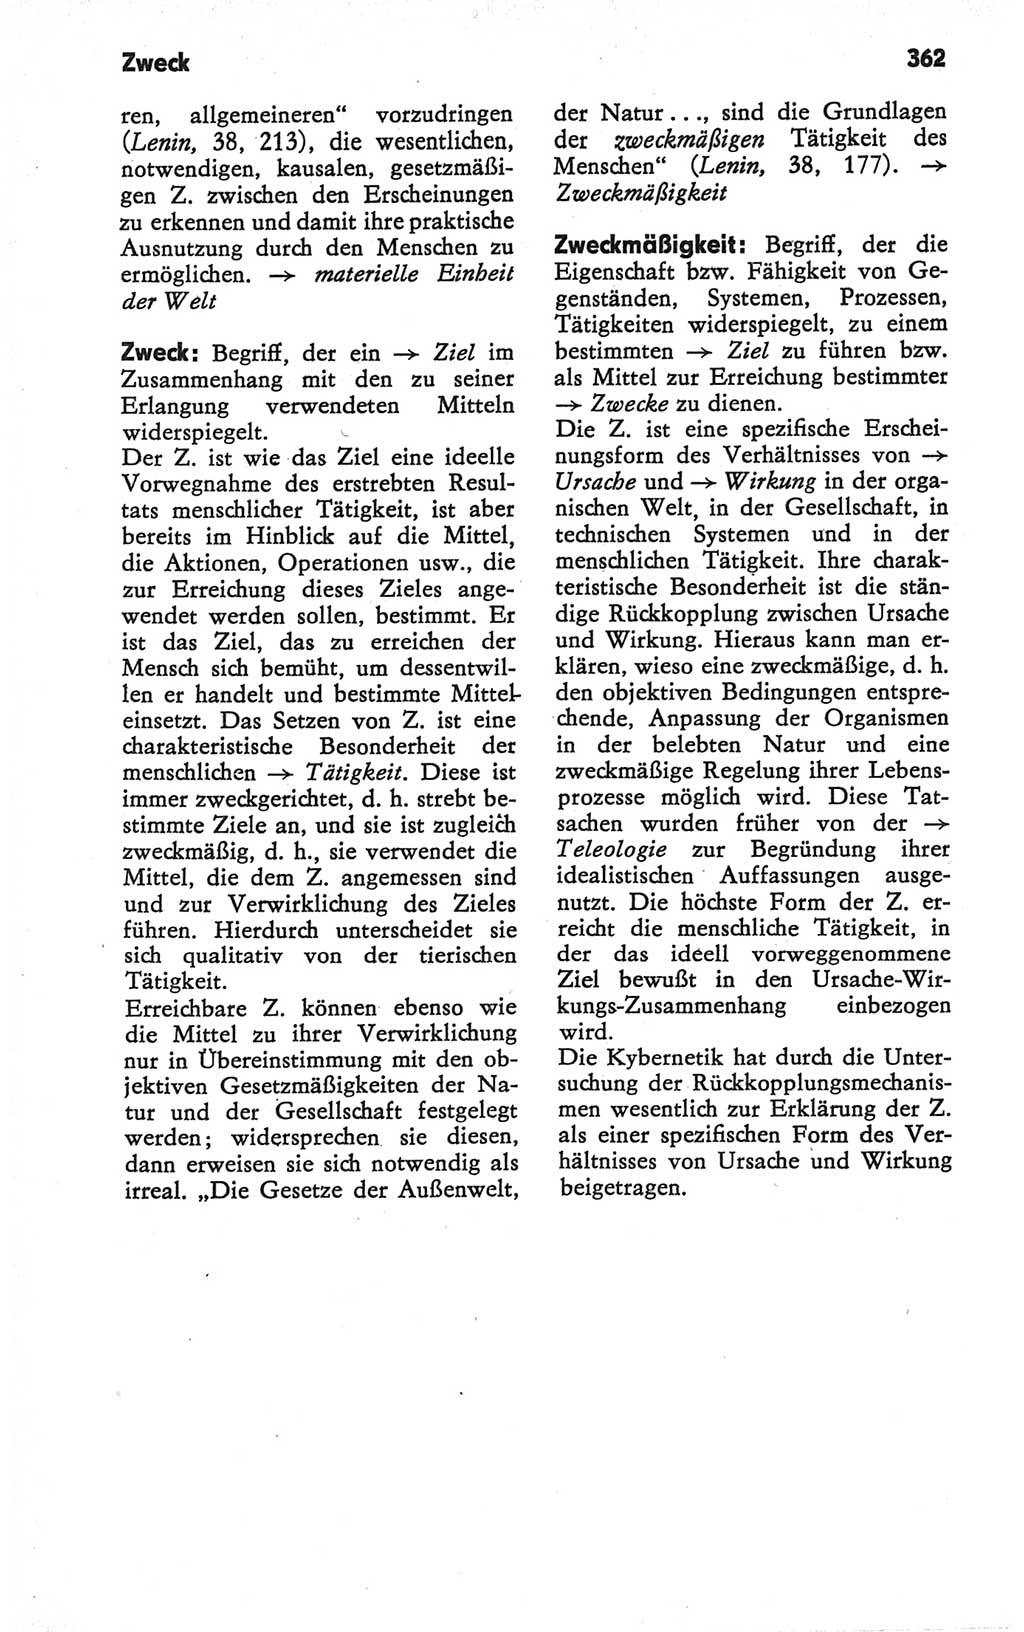 Kleines Wörterbuch der marxistisch-leninistischen Philosophie [Deutsche Demokratische Republik (DDR)] 1979, Seite 362 (Kl. Wb. ML Phil. DDR 1979, S. 362)